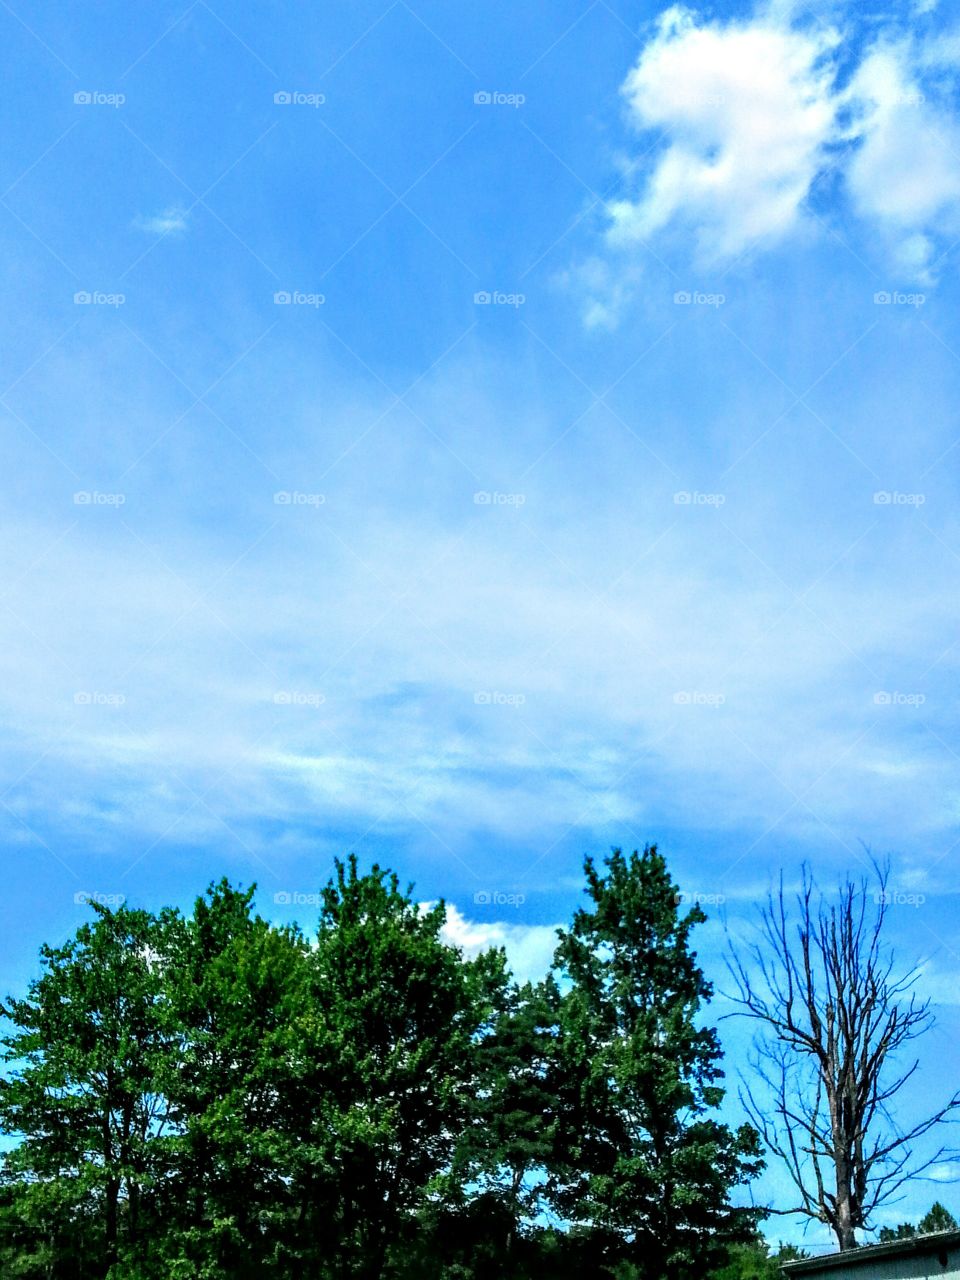 Blue Skies II. More blue skies in my area.